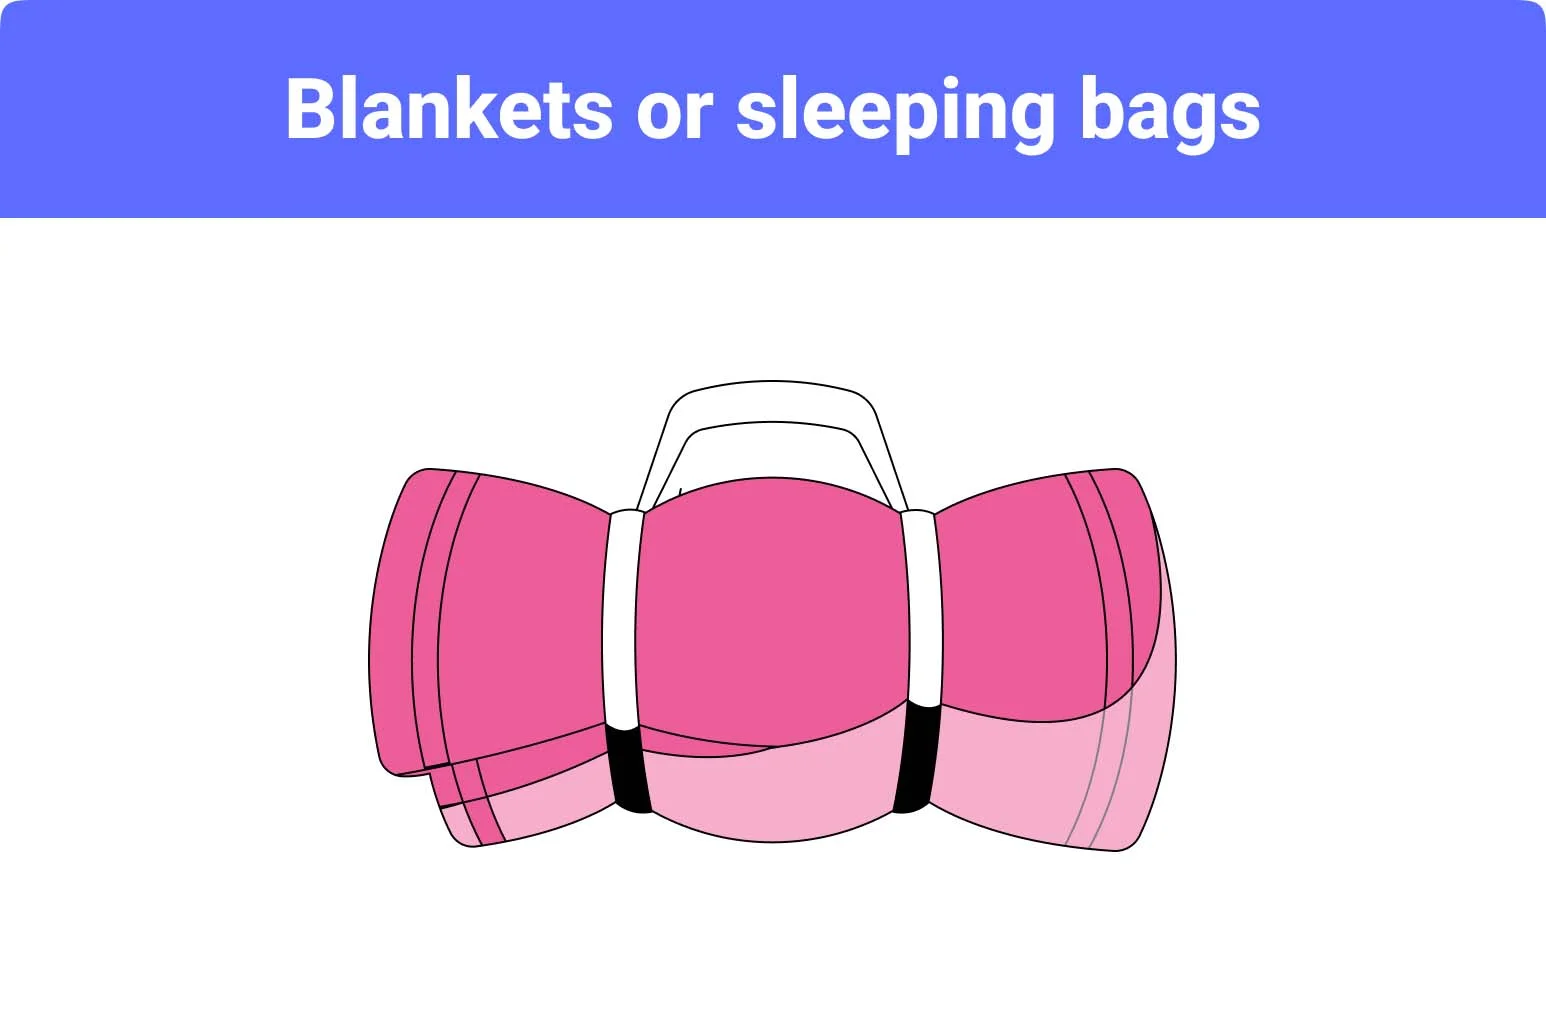 Blankets or sleeping bags